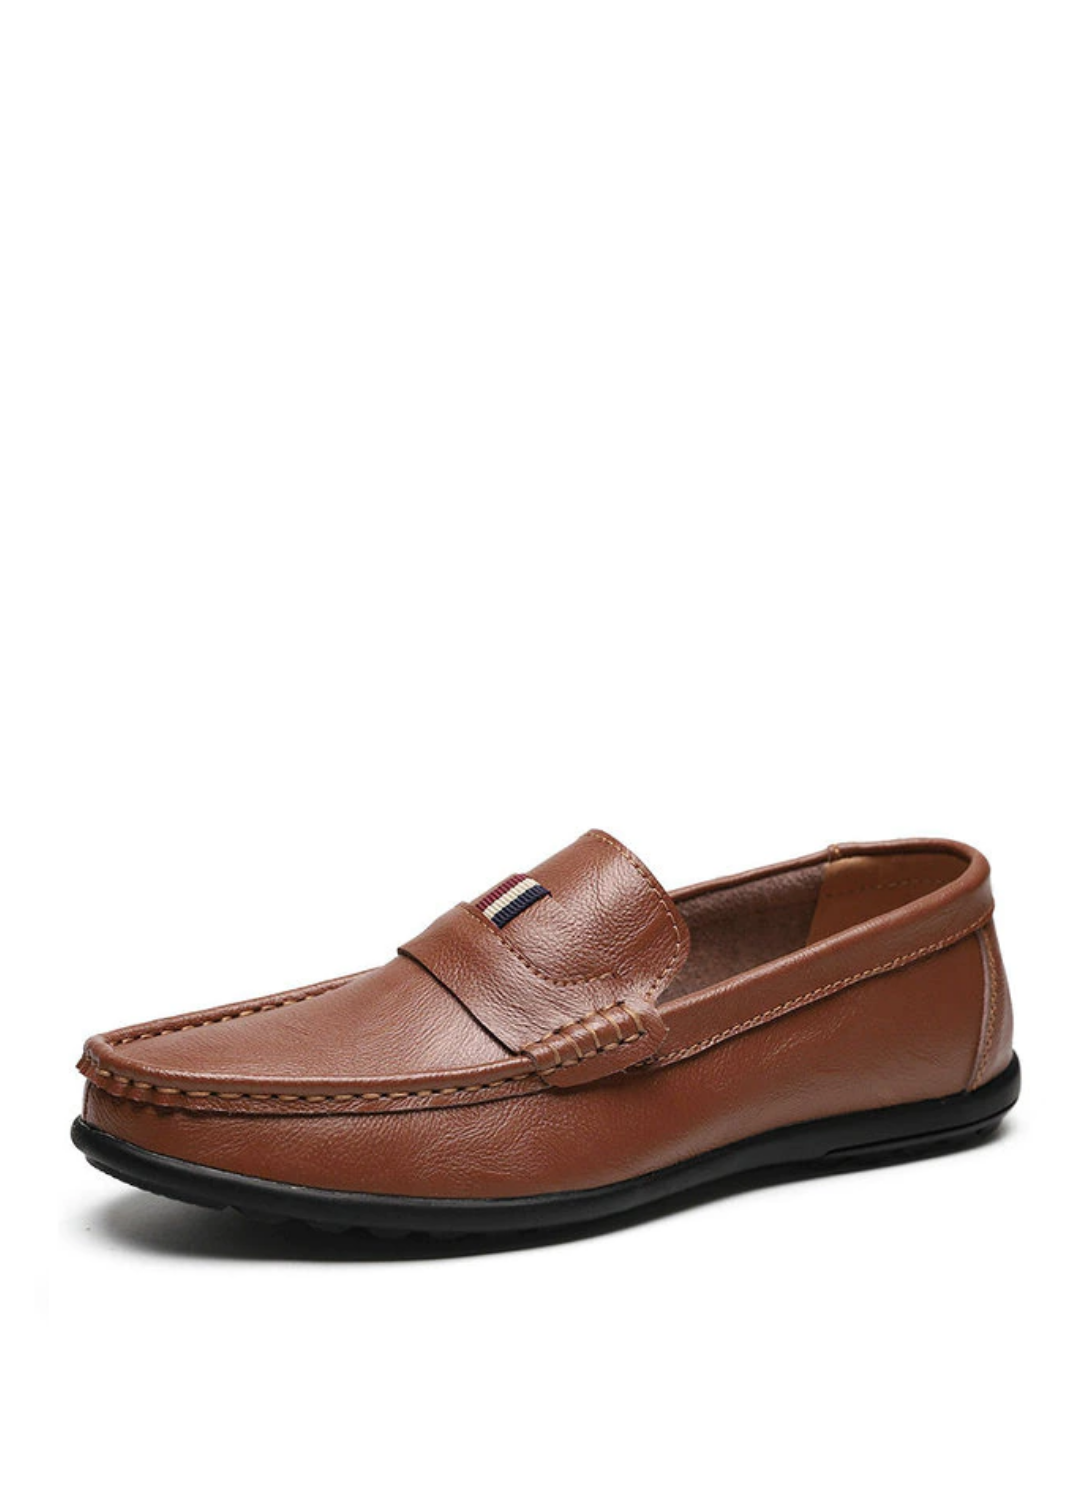 Kenneth Men's Loafers | Ultrasellershoes.com – Ultra Seller Shoes